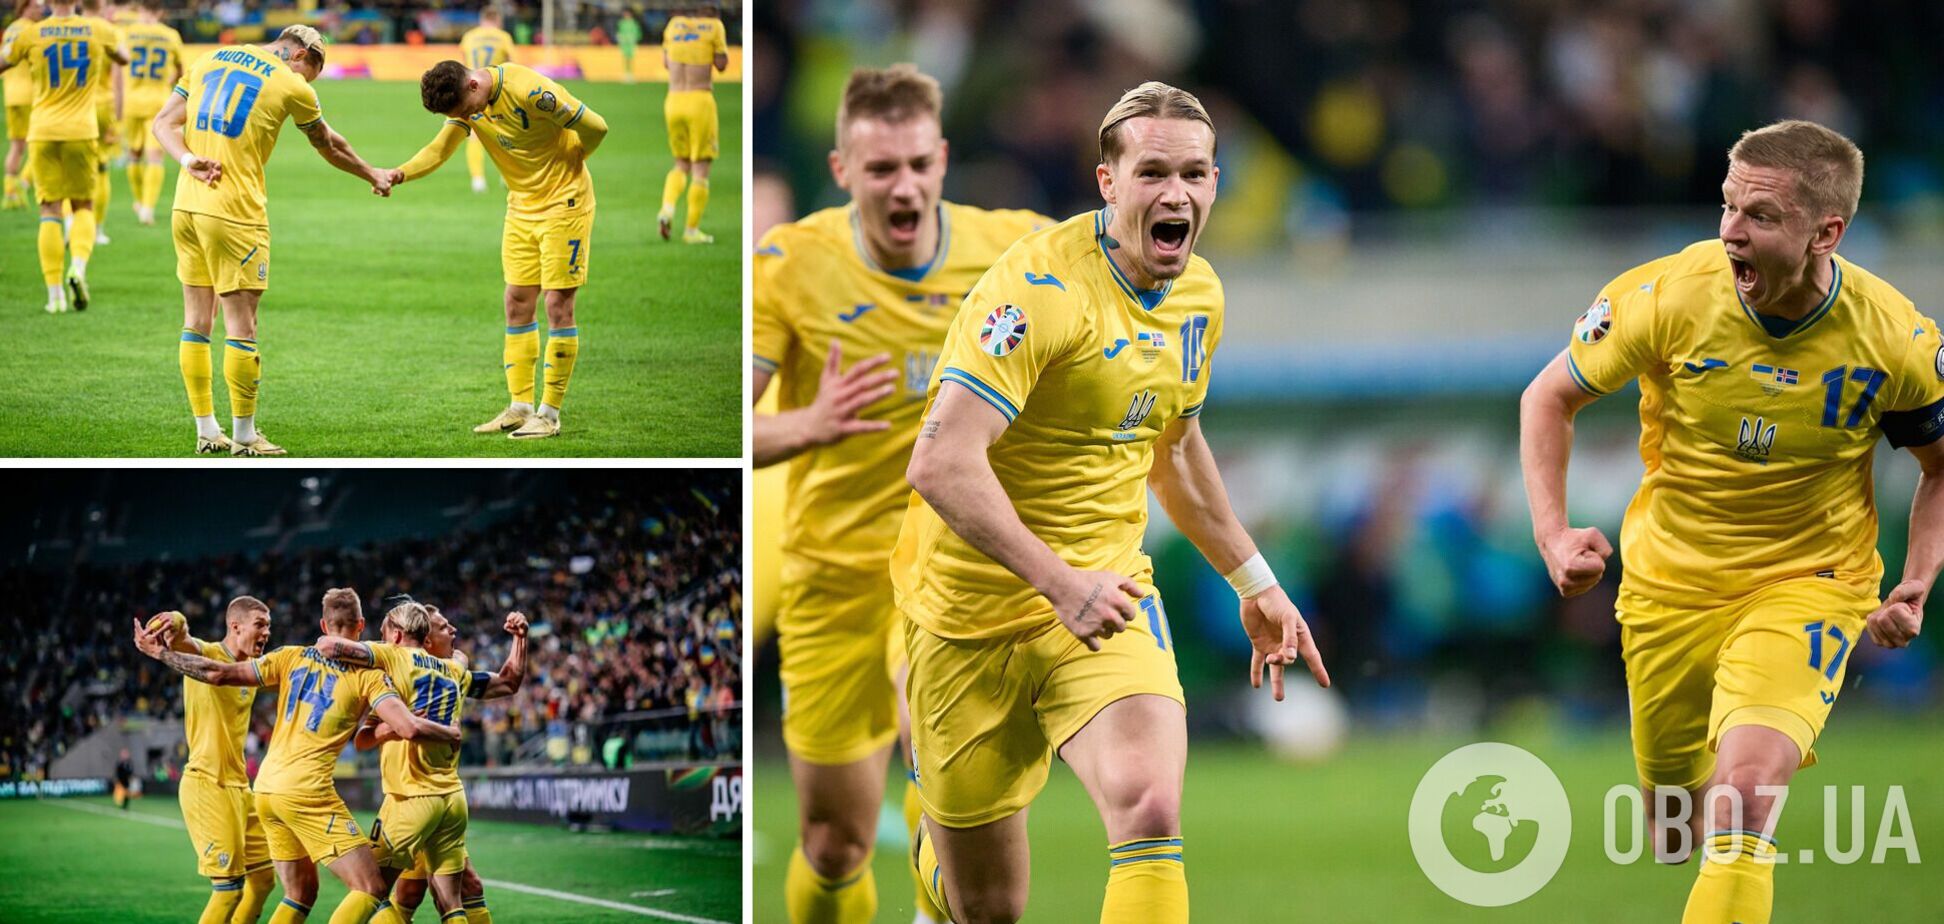 Сборная Украины по футболу обломала российских патриотов, желавших 'опозориться и улететь в небытие'